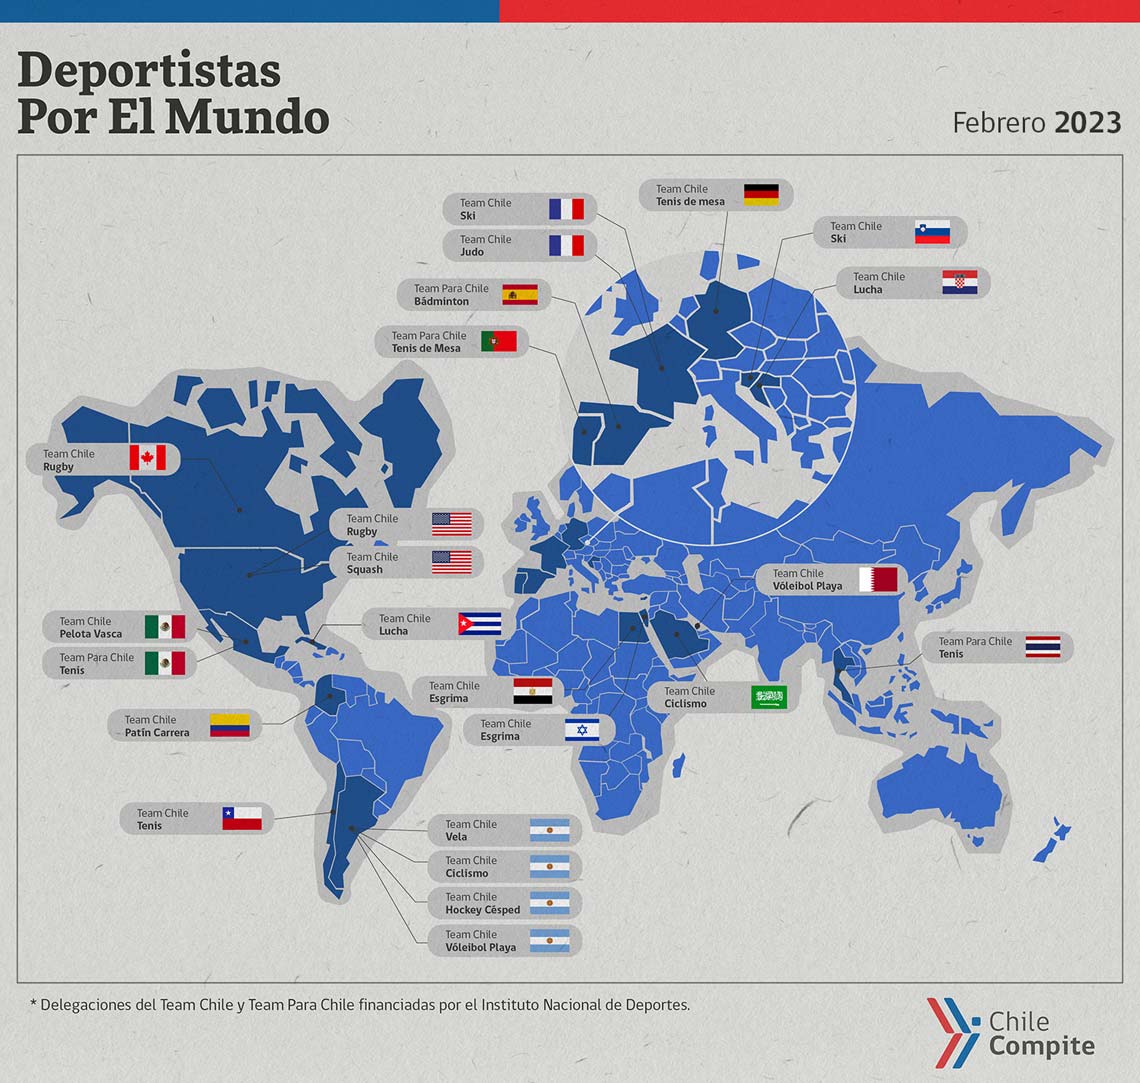 Mapa-deportistas-por-el-mundo-2023-febrero